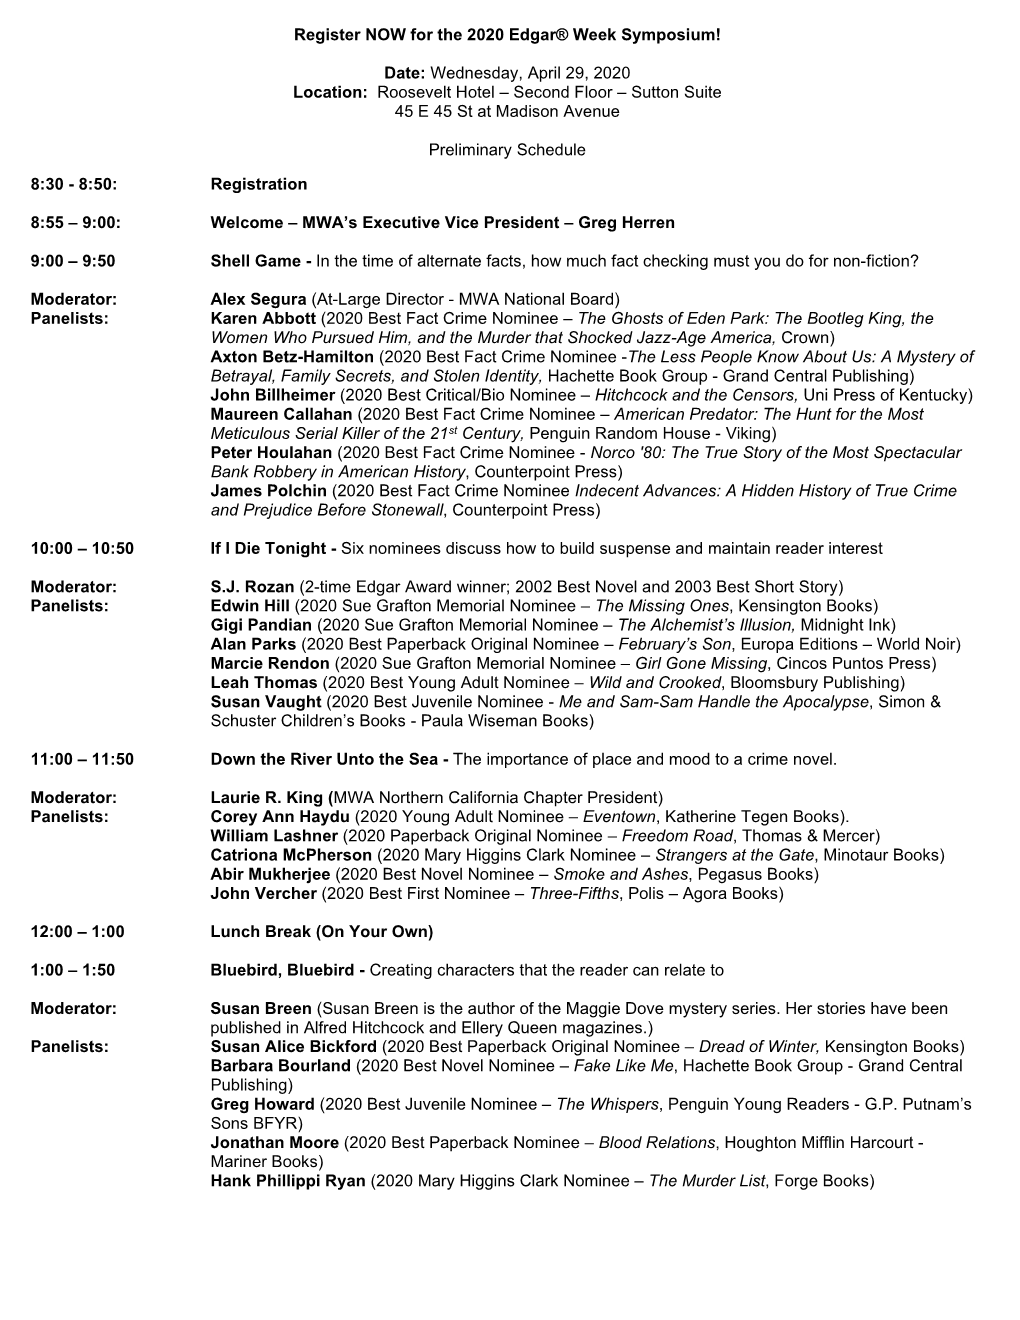 Edgar Symposium Schedule (Proposed)